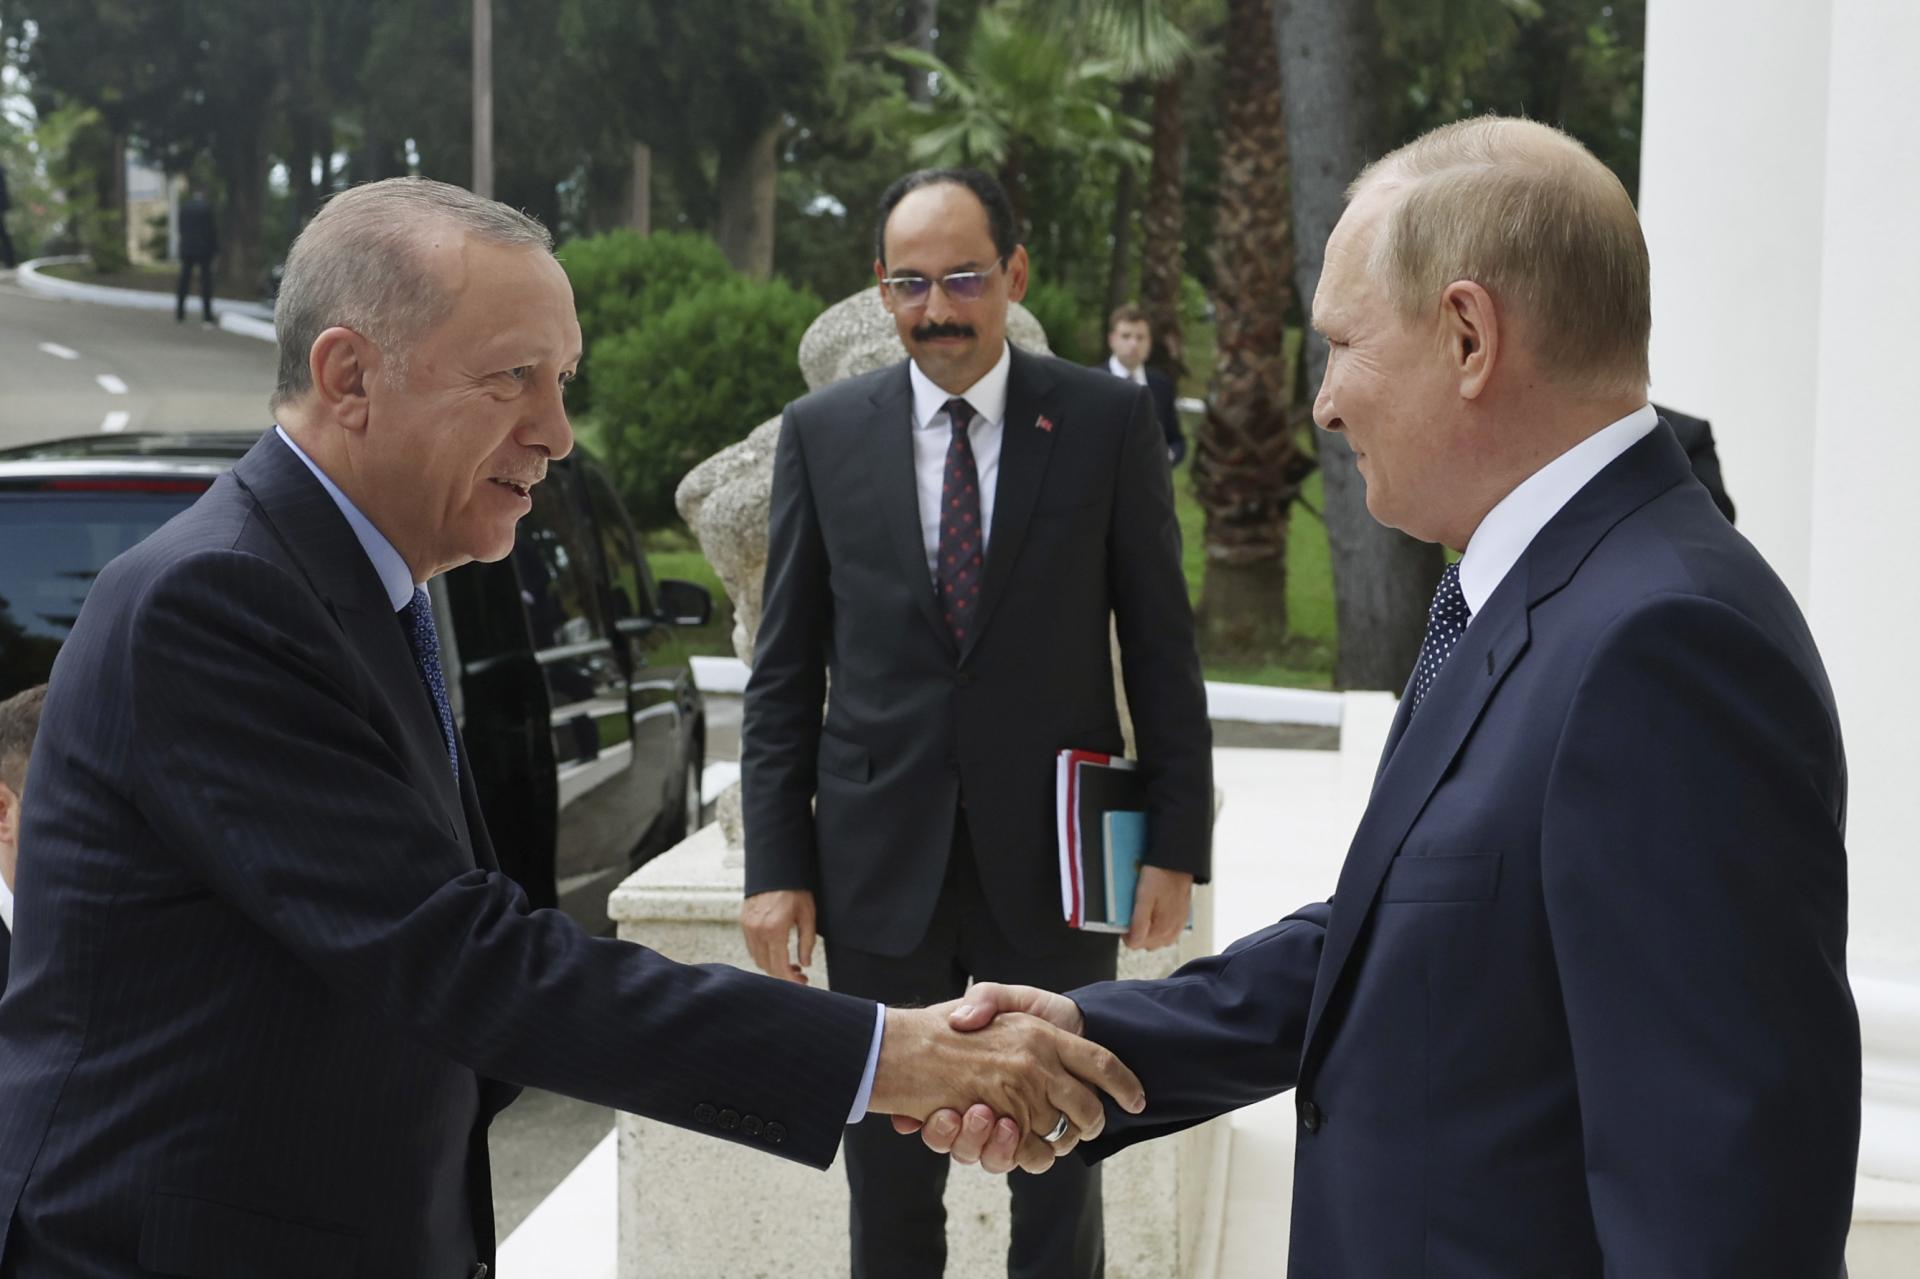 Prosba v podobe prinútenia. Putin by s pomocou Turecka vedel obísť západné sankcie